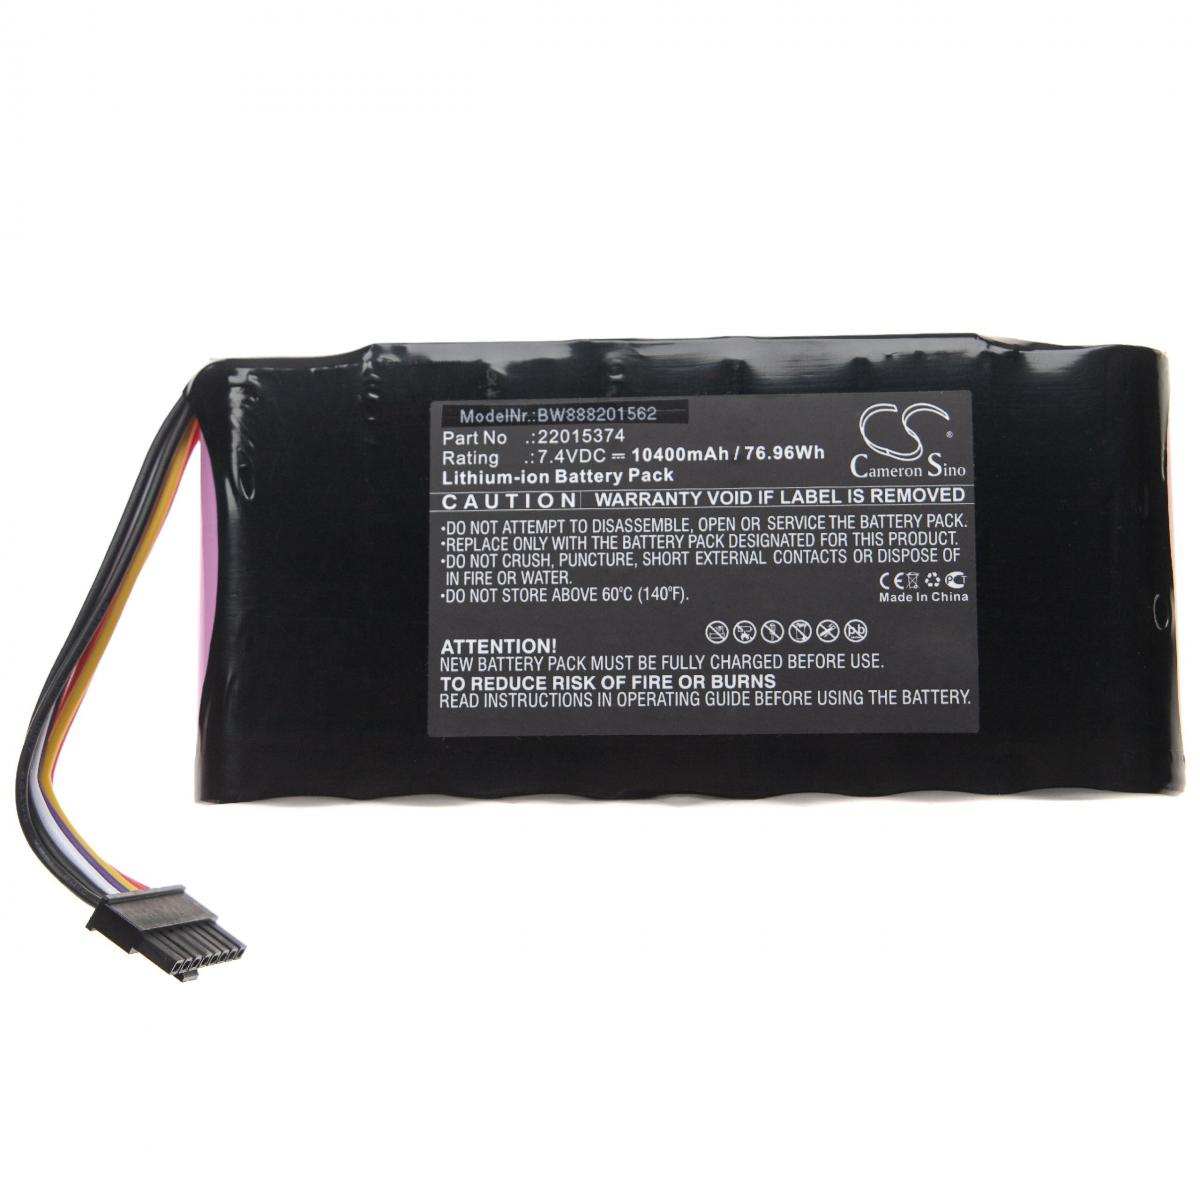 Vhbw - vhbw Batterie remplace JDSU 22015374, 22016374 pour outil de mesure (10400mAh 7,4V Li-Ion) - Piles rechargeables